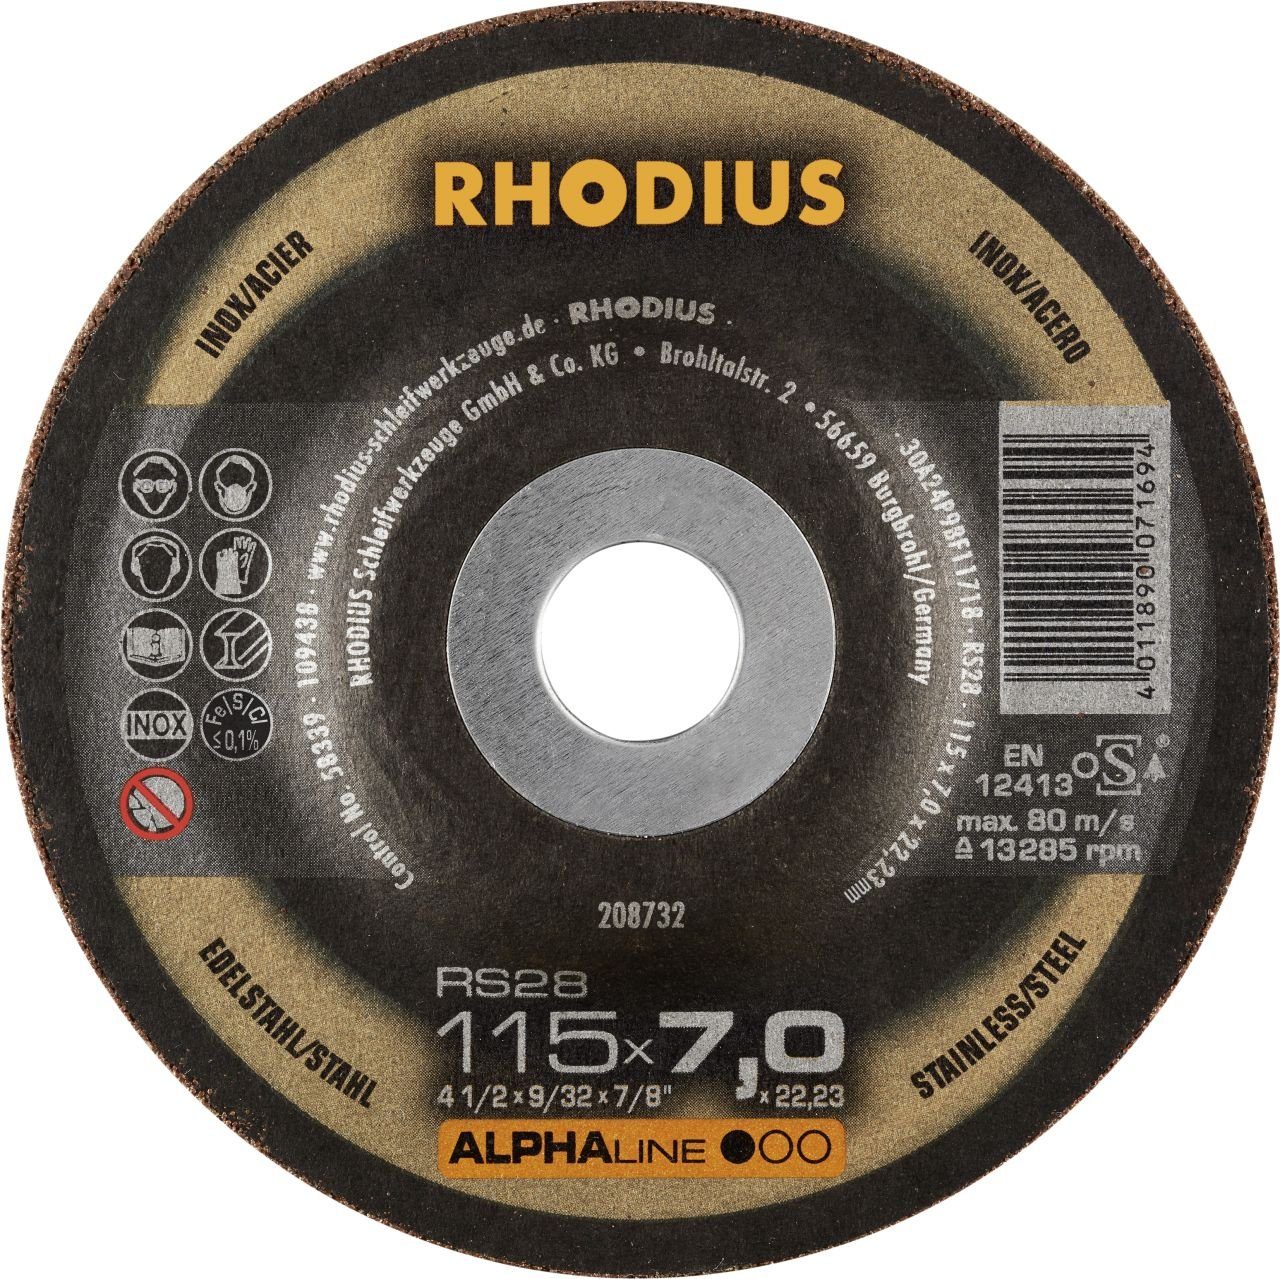 Rhodius Winkelschleifer Rhodius RS28 Schruppscheibe Ø 115 mm Bohrung 22,23